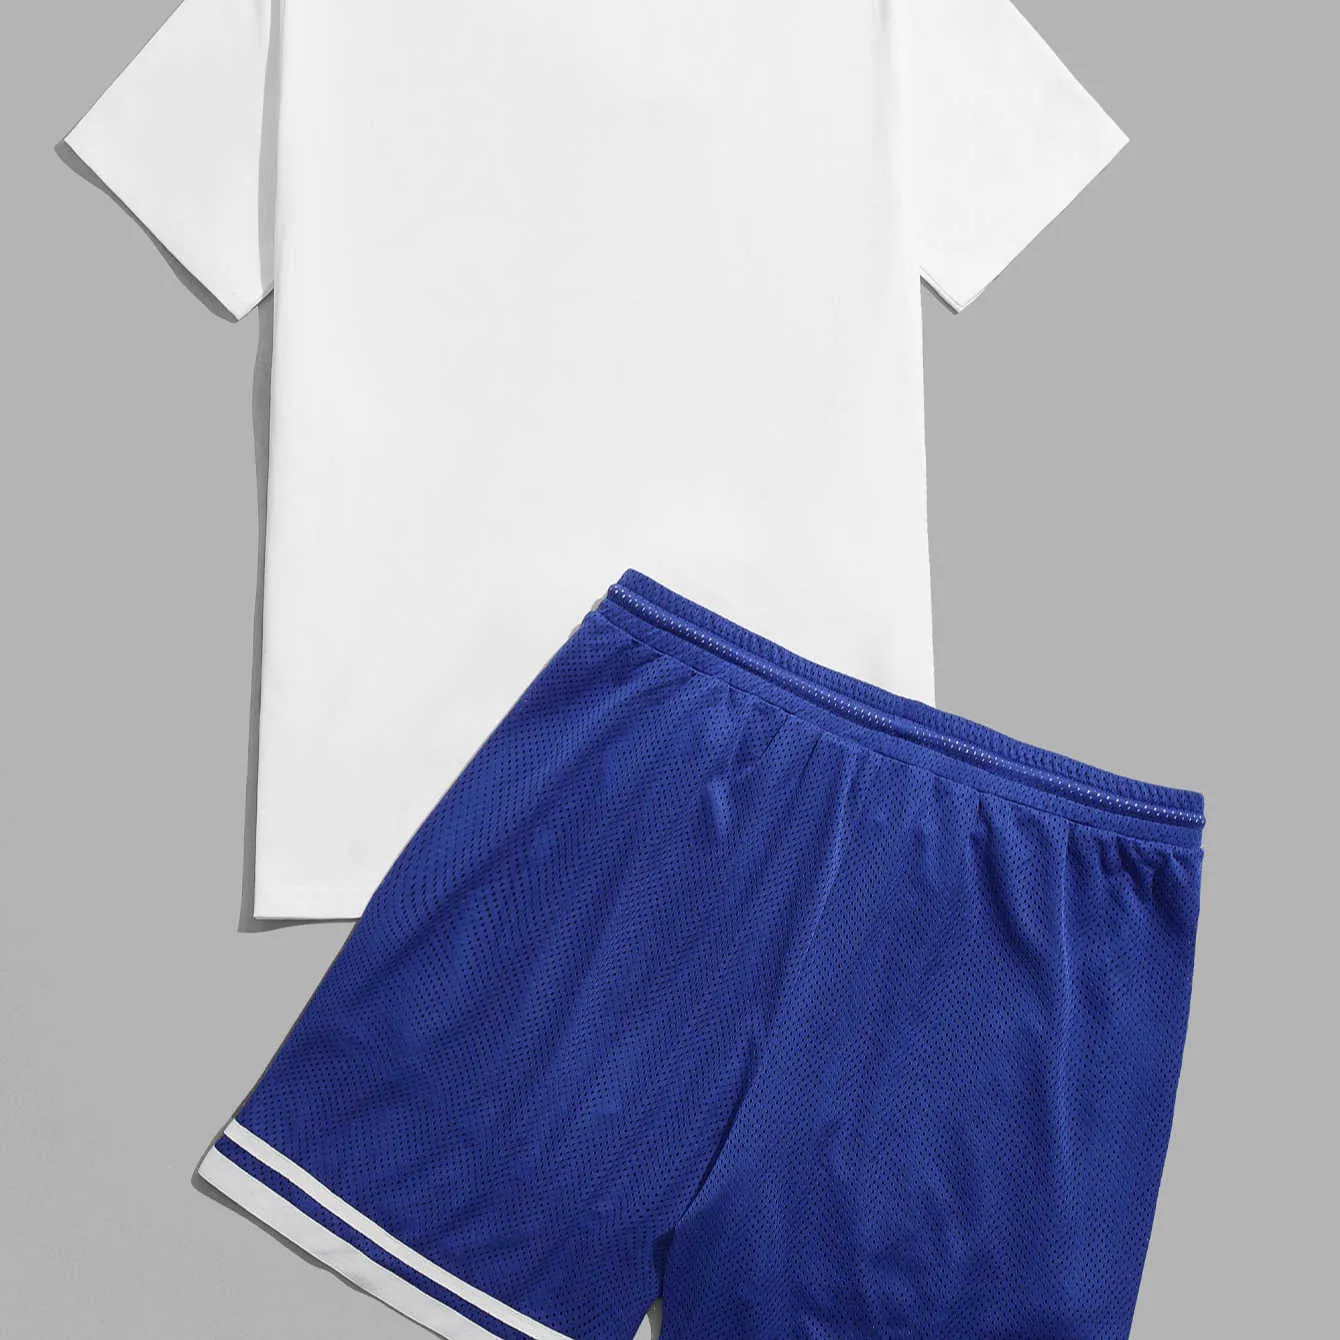 Masculino respirável e confortável de roupas esportivas de roupas simples de design de algodão shorts de fitness shorts de fitness shorts